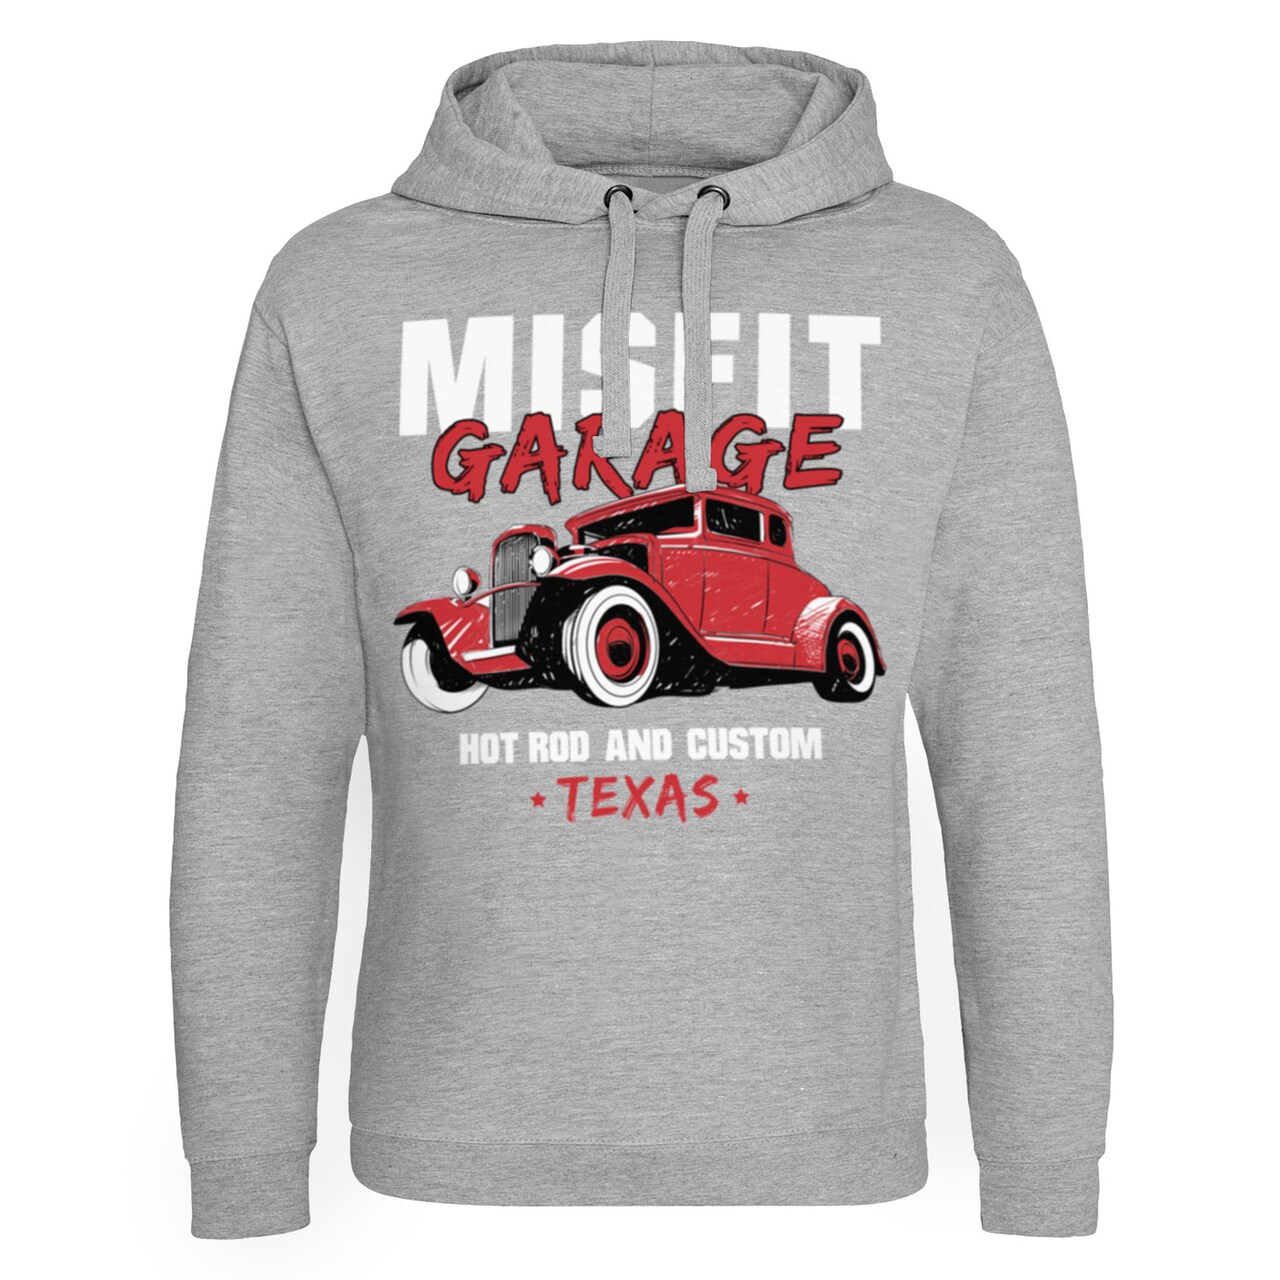 Misfit Garage Hot Rod & Custom Epic Hoodie - Shirtstore